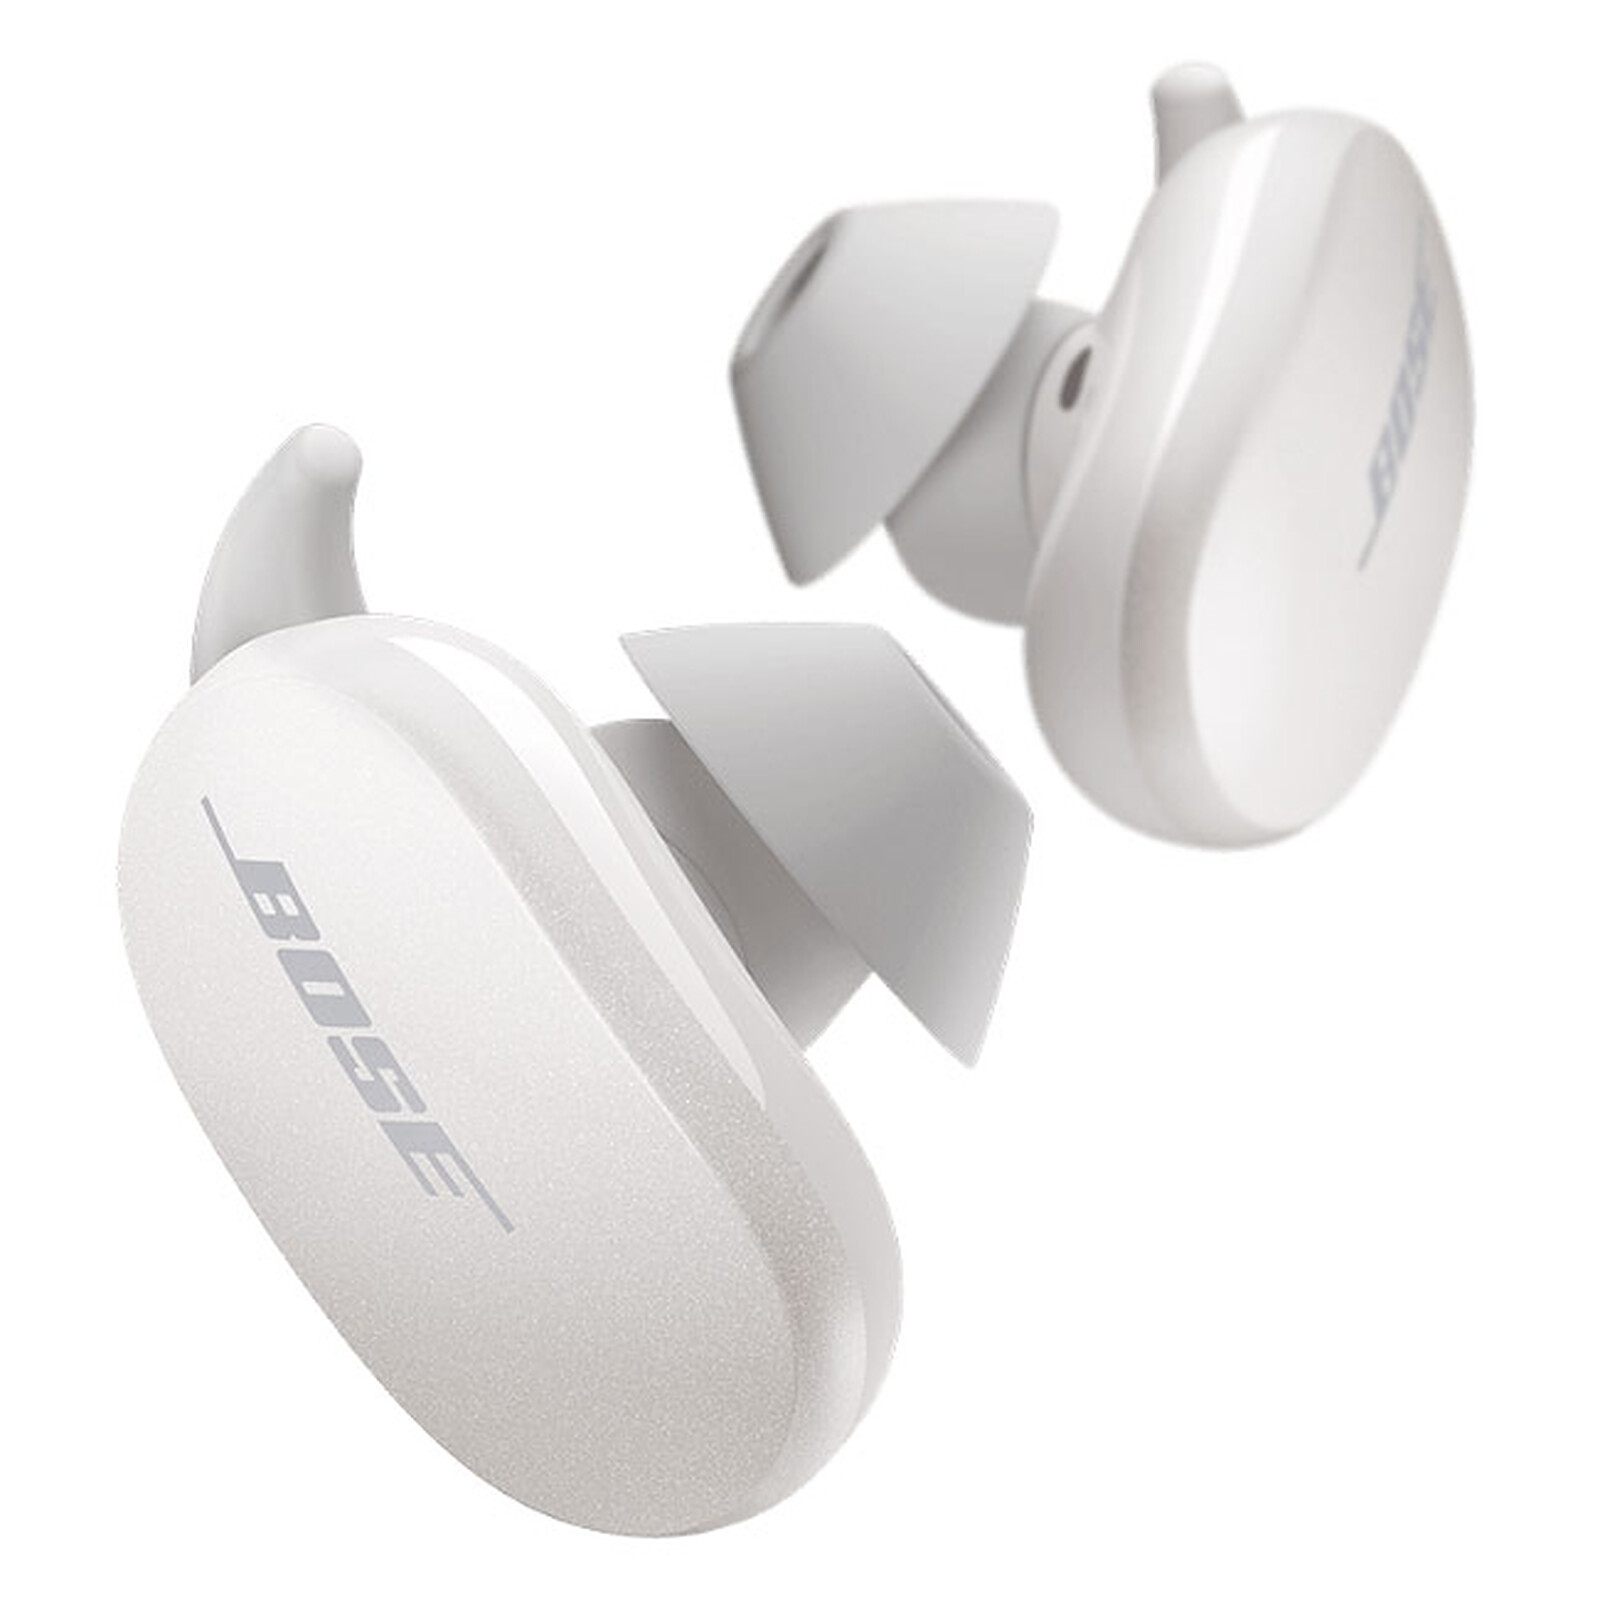 Ecouteurs Bluetooth : Airpods, Bose Le guide d'achat et notre